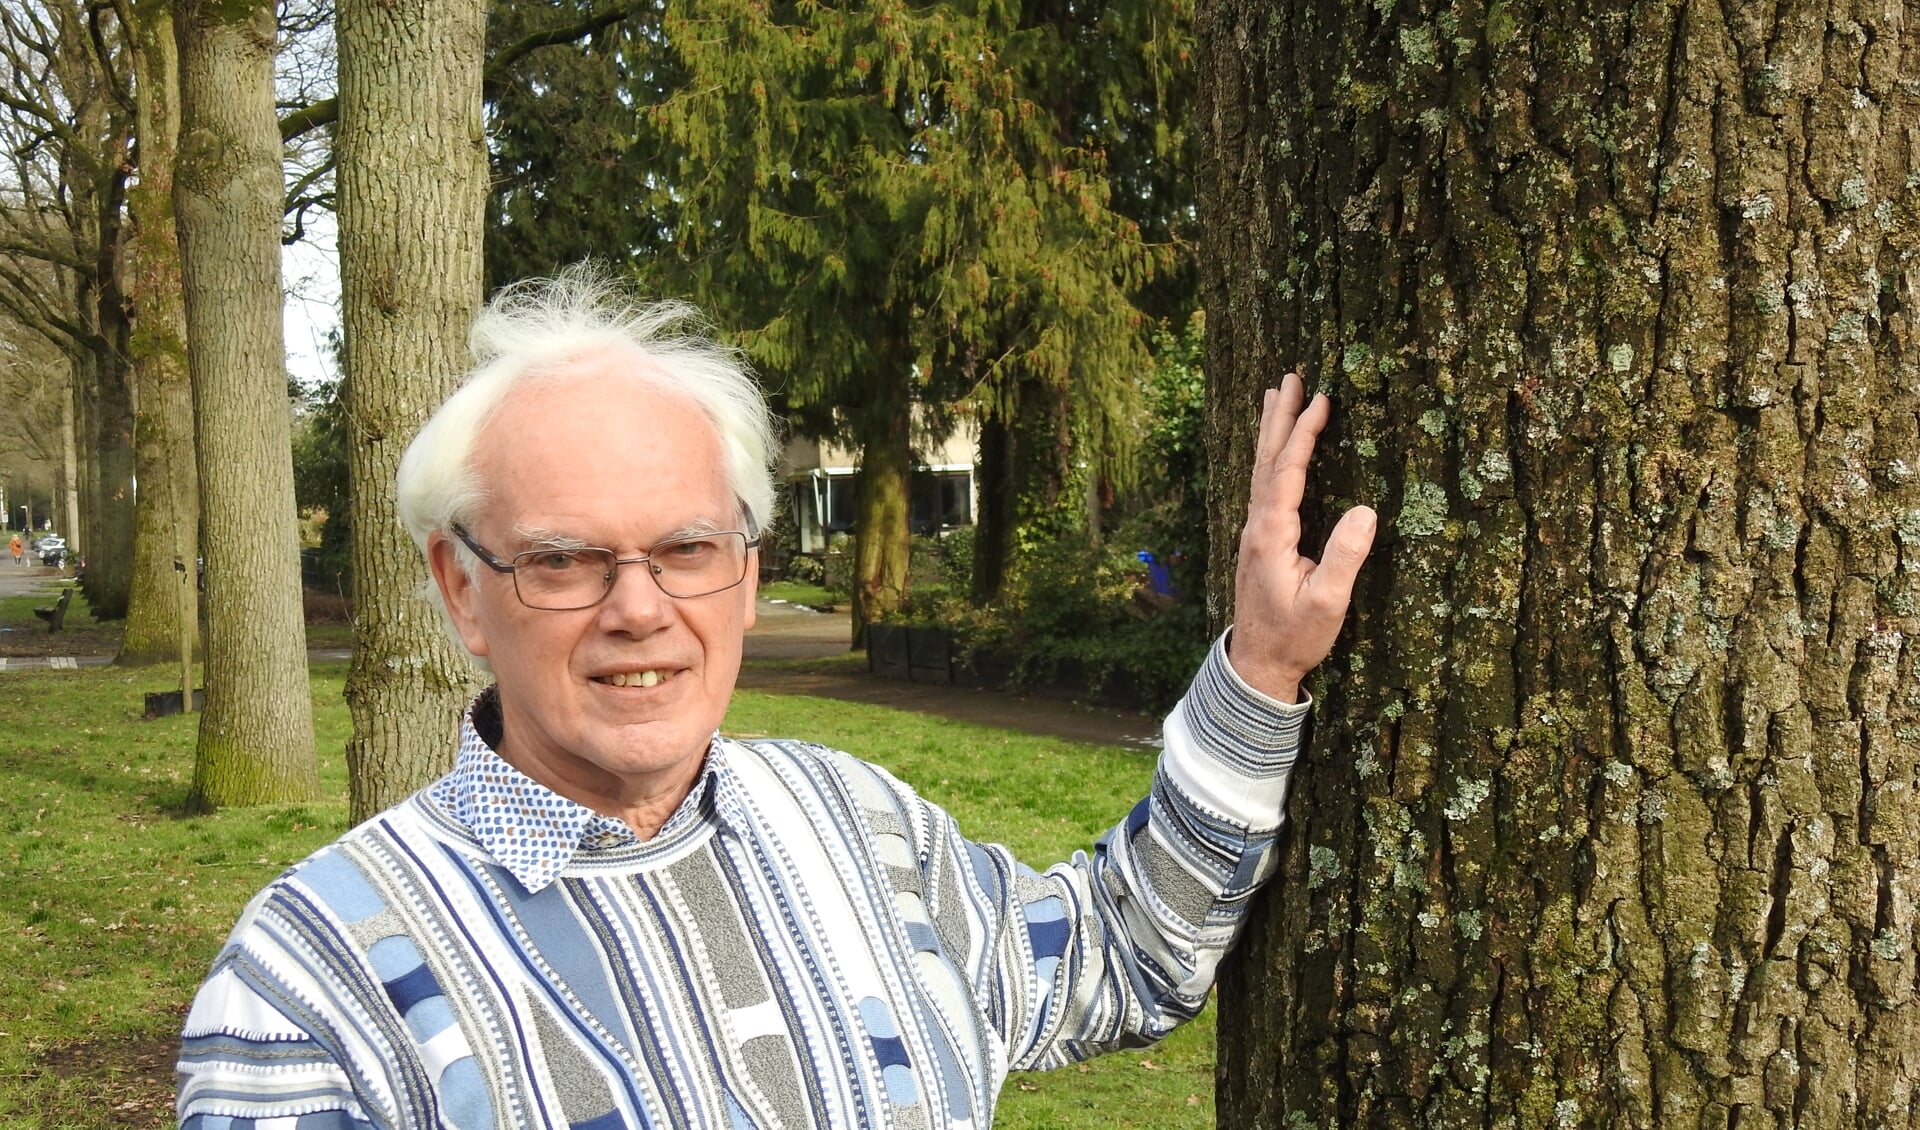 Joost Stalpers: 'Bomen horen erbij. Zij zijn leven en hebben recht op een fatsoenlijke behandeling. Een van mijn zorgen in Baarn is, dat ze dat niet altijd krijgen.’